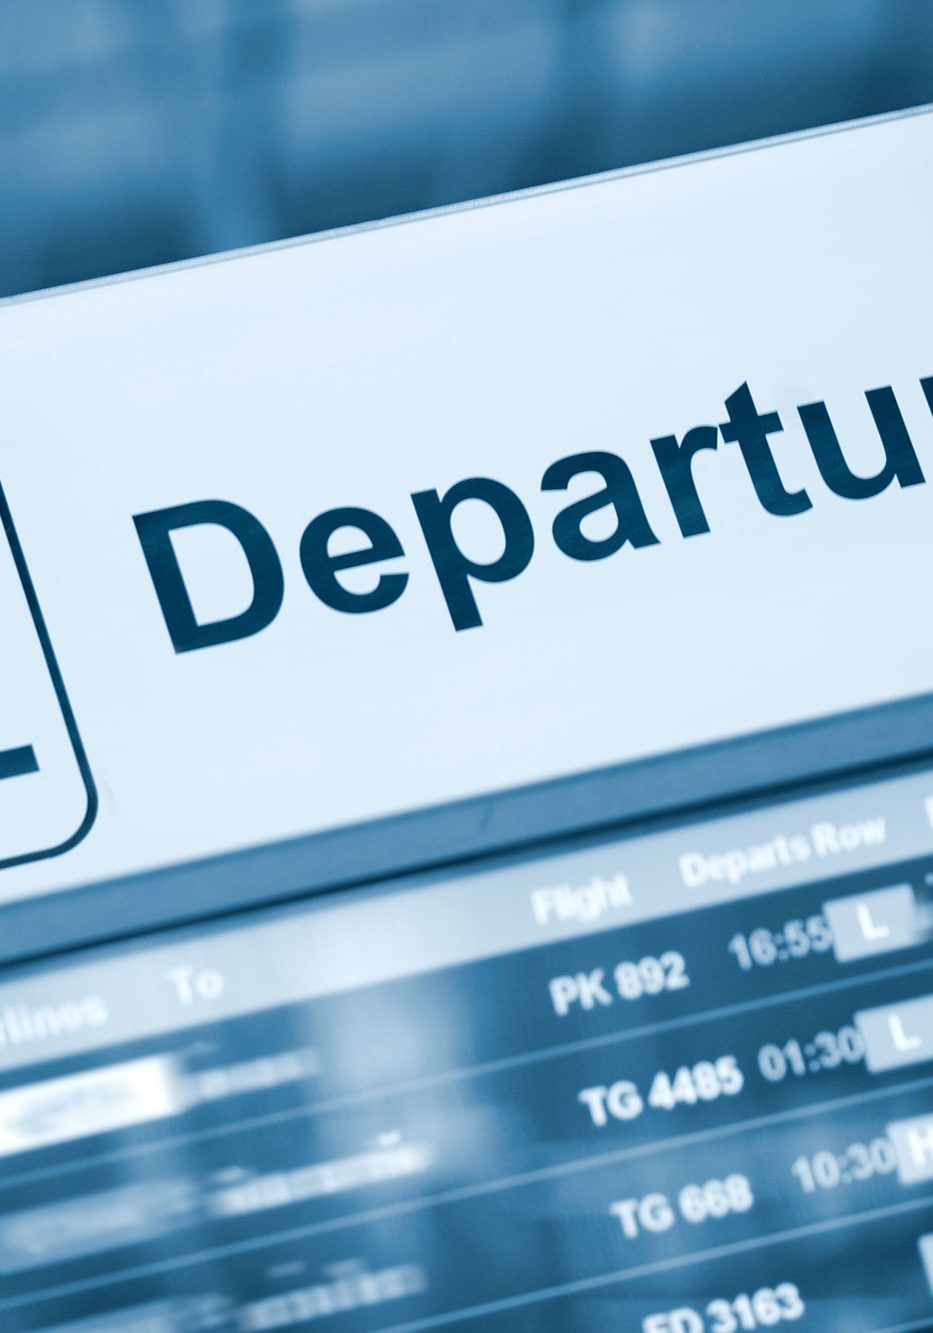 Airport Departures